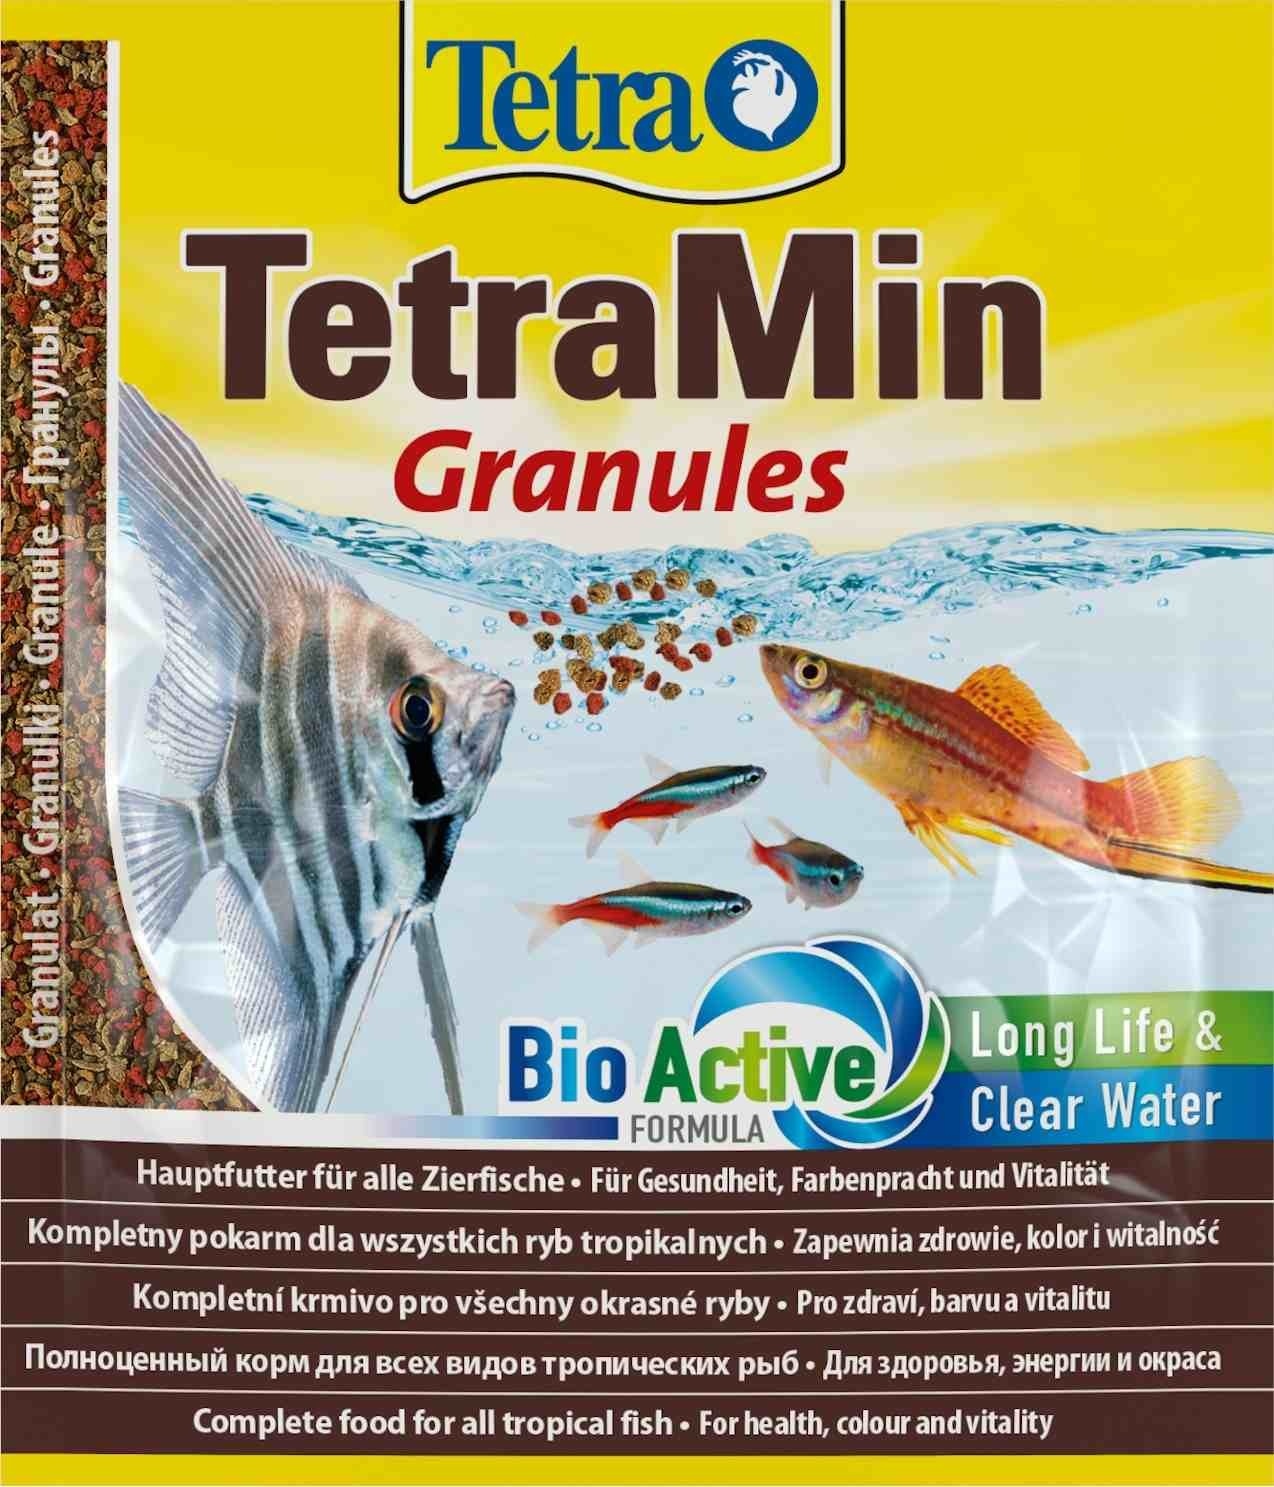 Tetra (корма) Tetra (корма) корм для всех видов тропических рыб. гранулы TetraMin Granules (15 г) tetra корма tetra корма корм для всех видов тропических рыб чипсы 110 г